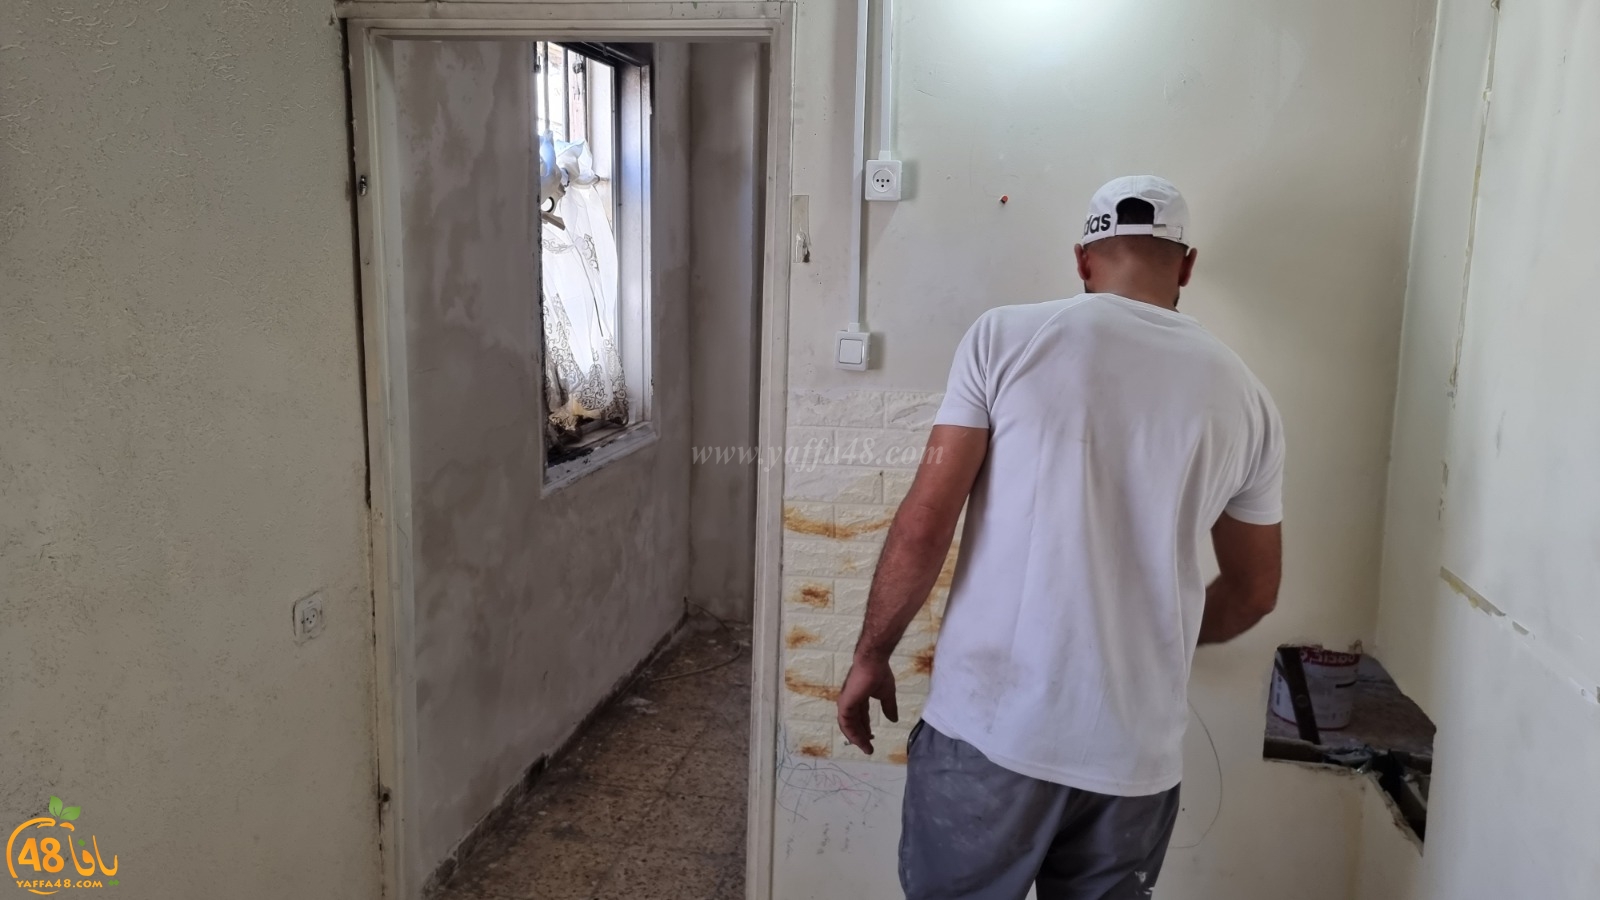 فيديو: جمعية يافا قولاً وعملاً - اختتام مشروع ترميم بيت عائلة جنتازي